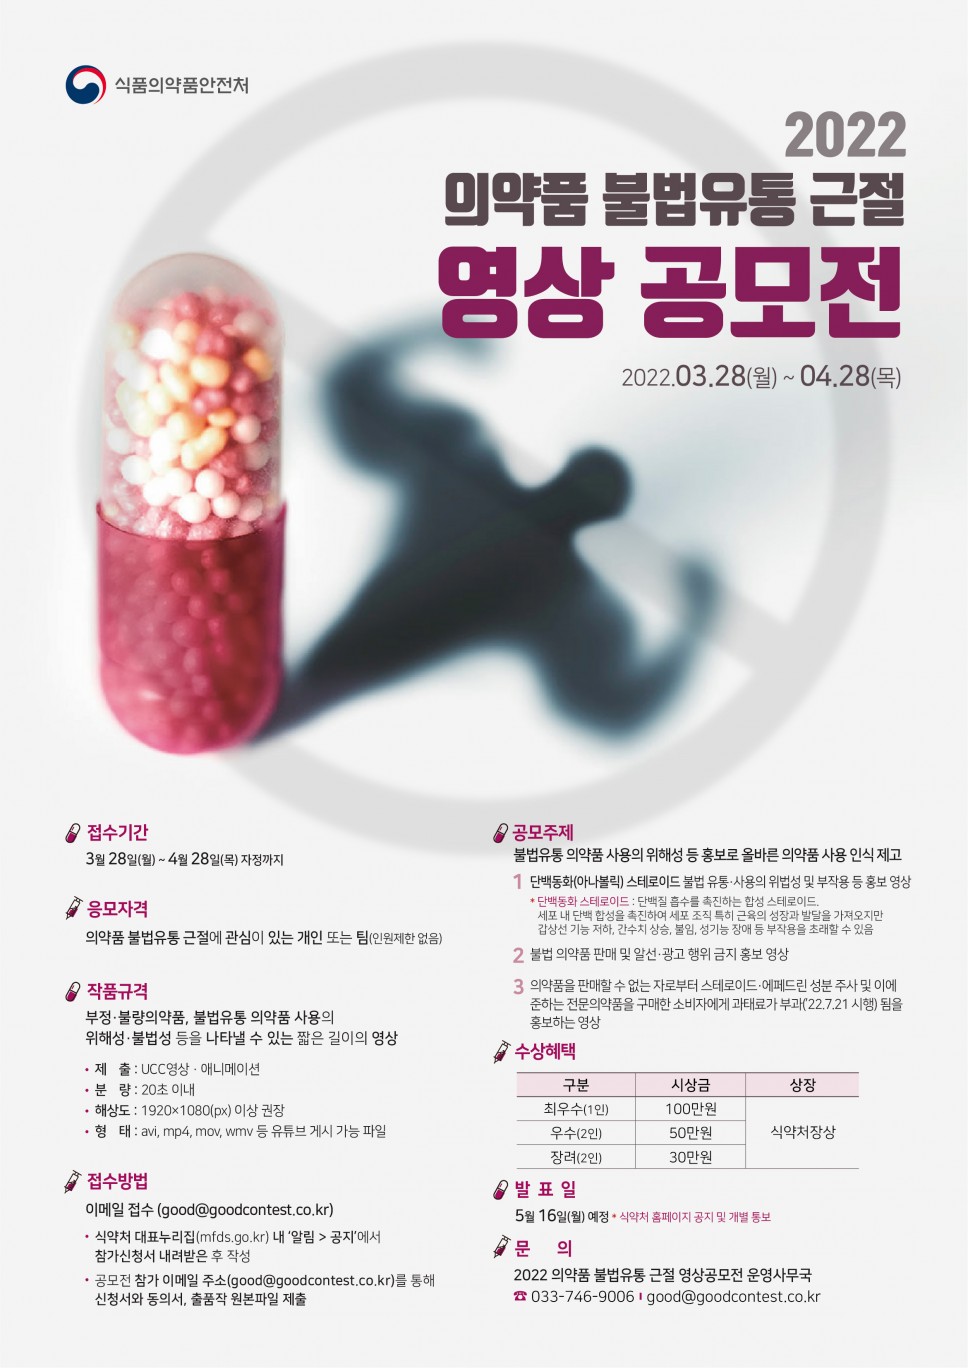 2022 의약품 불법유통 근절 영상 공모전_식품의약품안전처_포스터_최종_220324